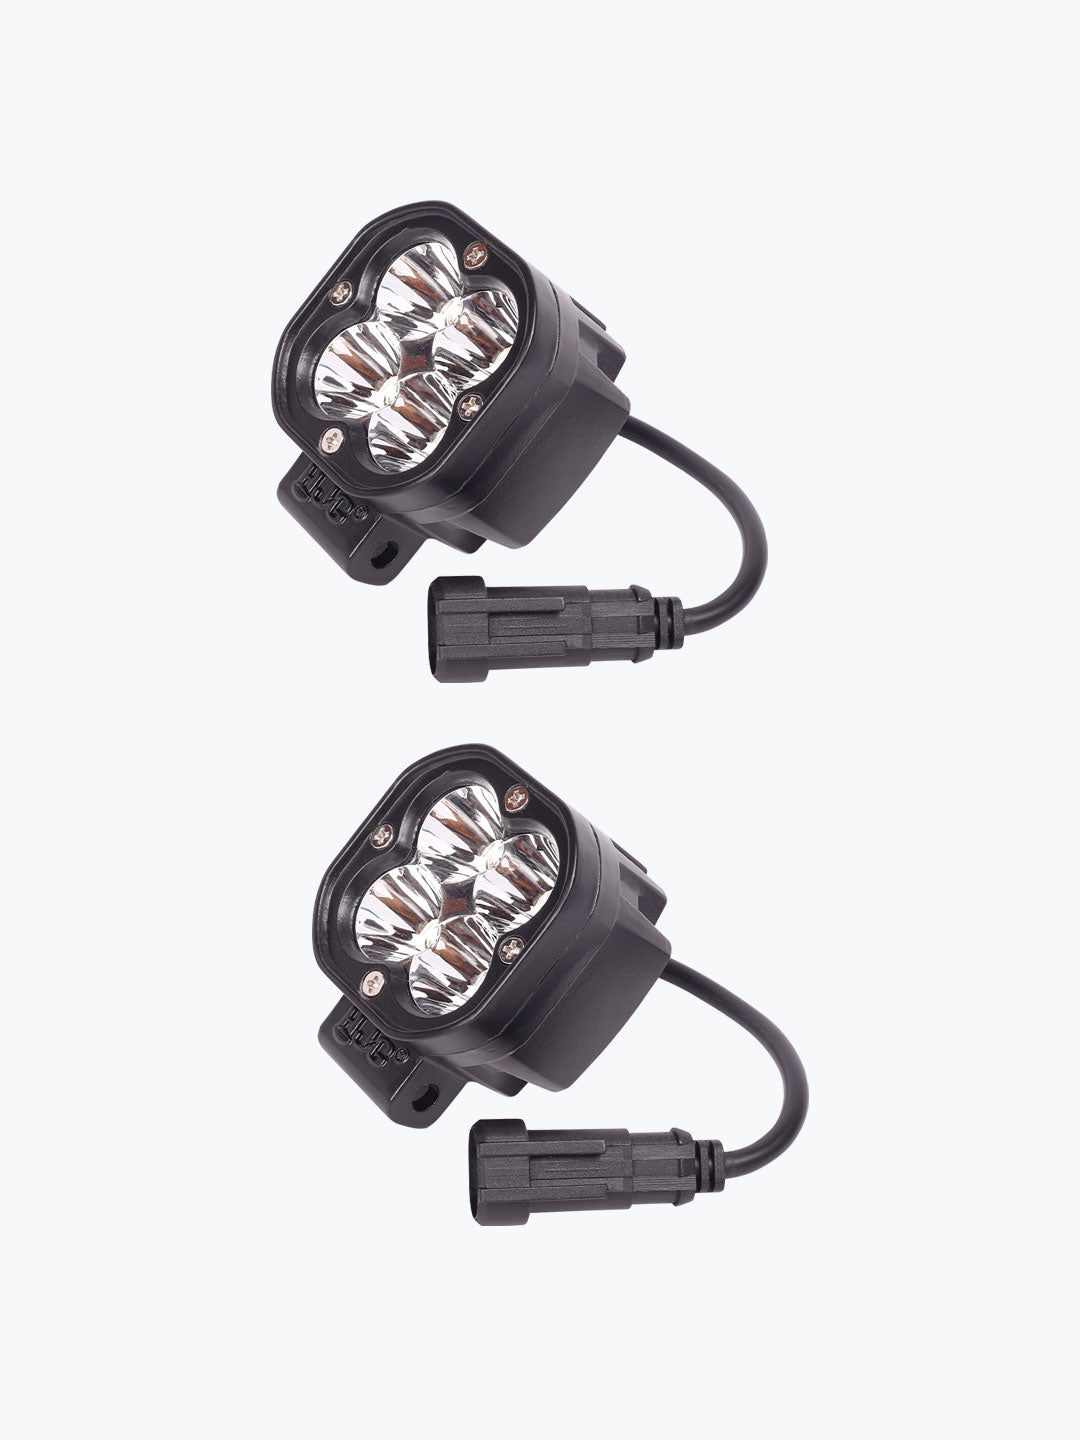 HJG 4 LED Pair Foglight Premium 1.0